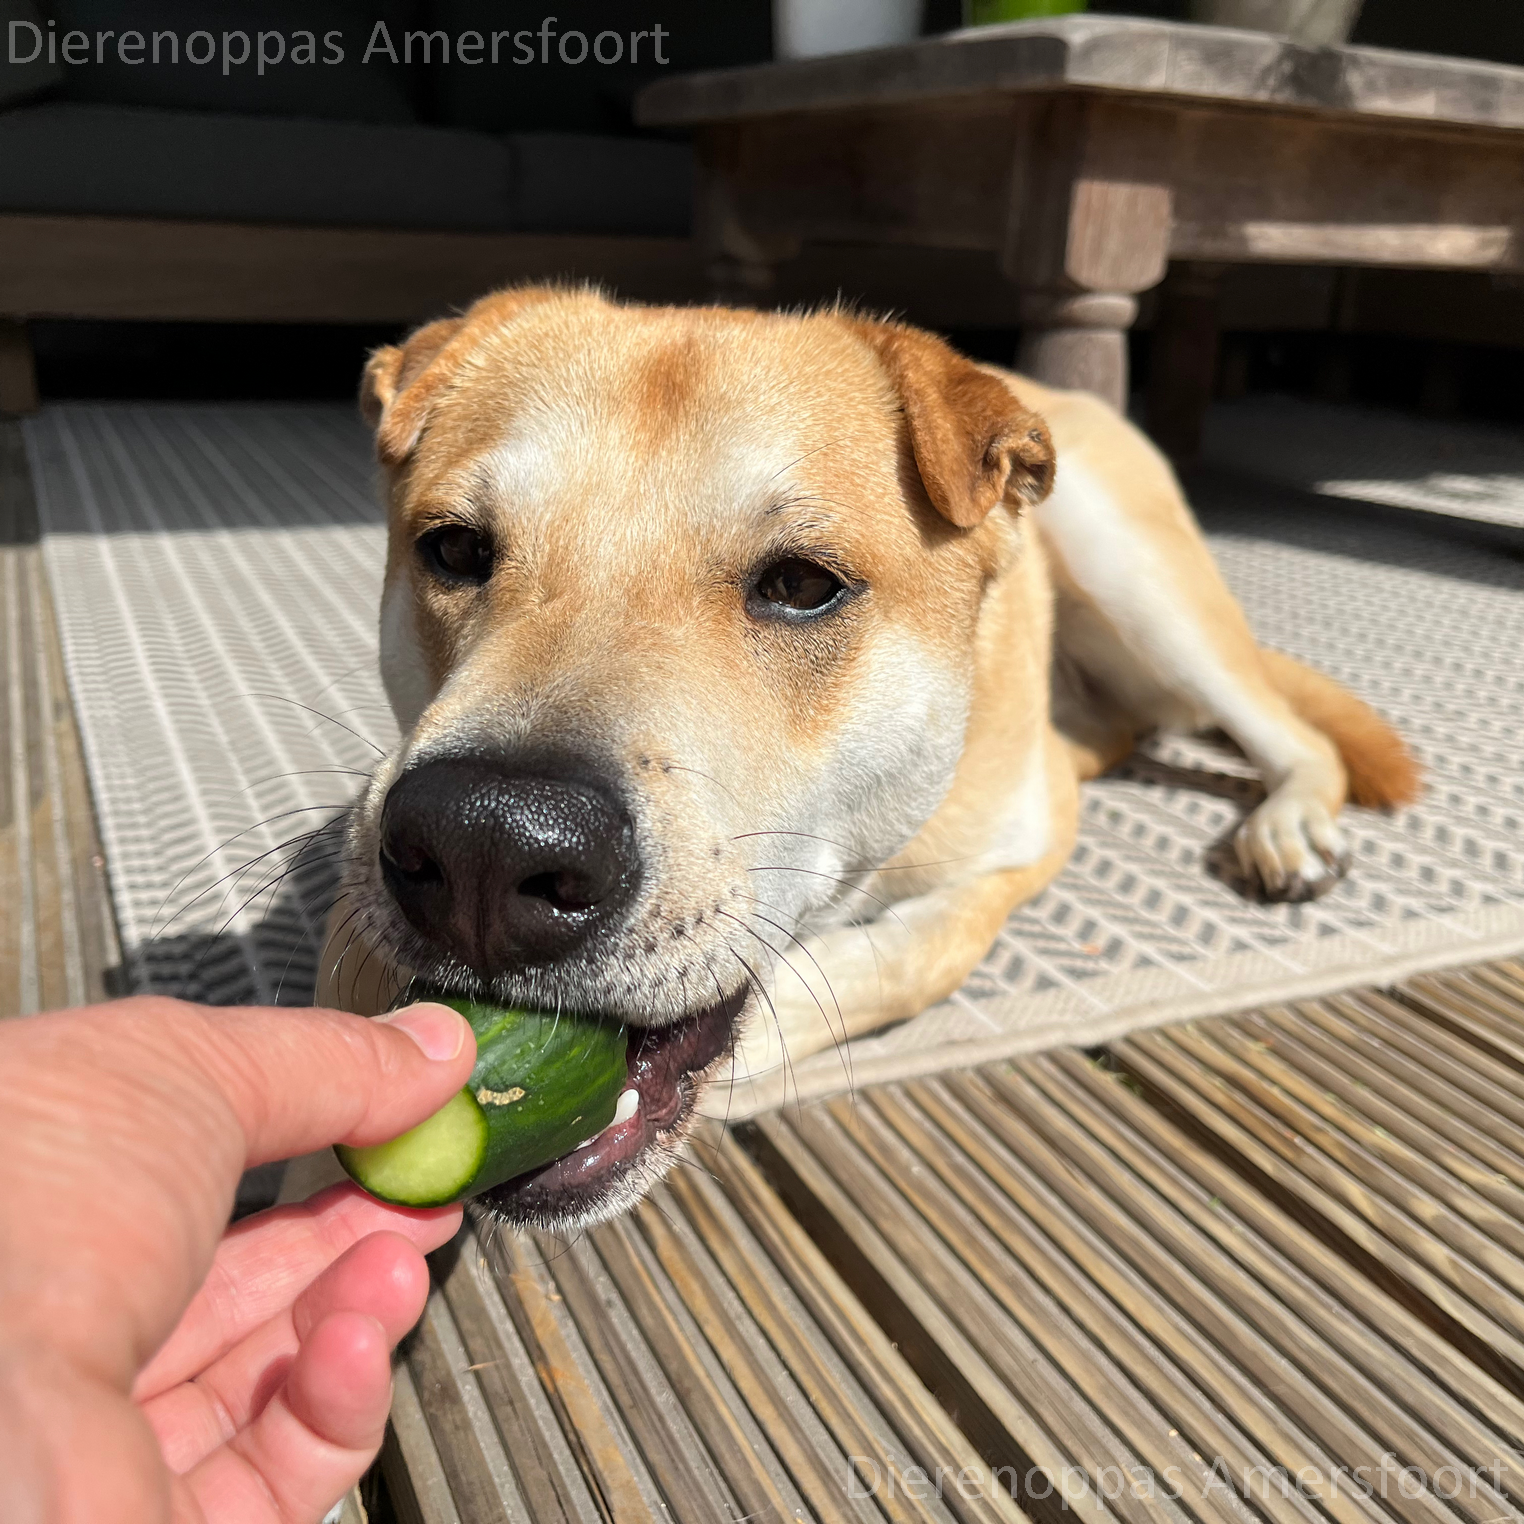 Hoeveel komkommer mag een hond eten